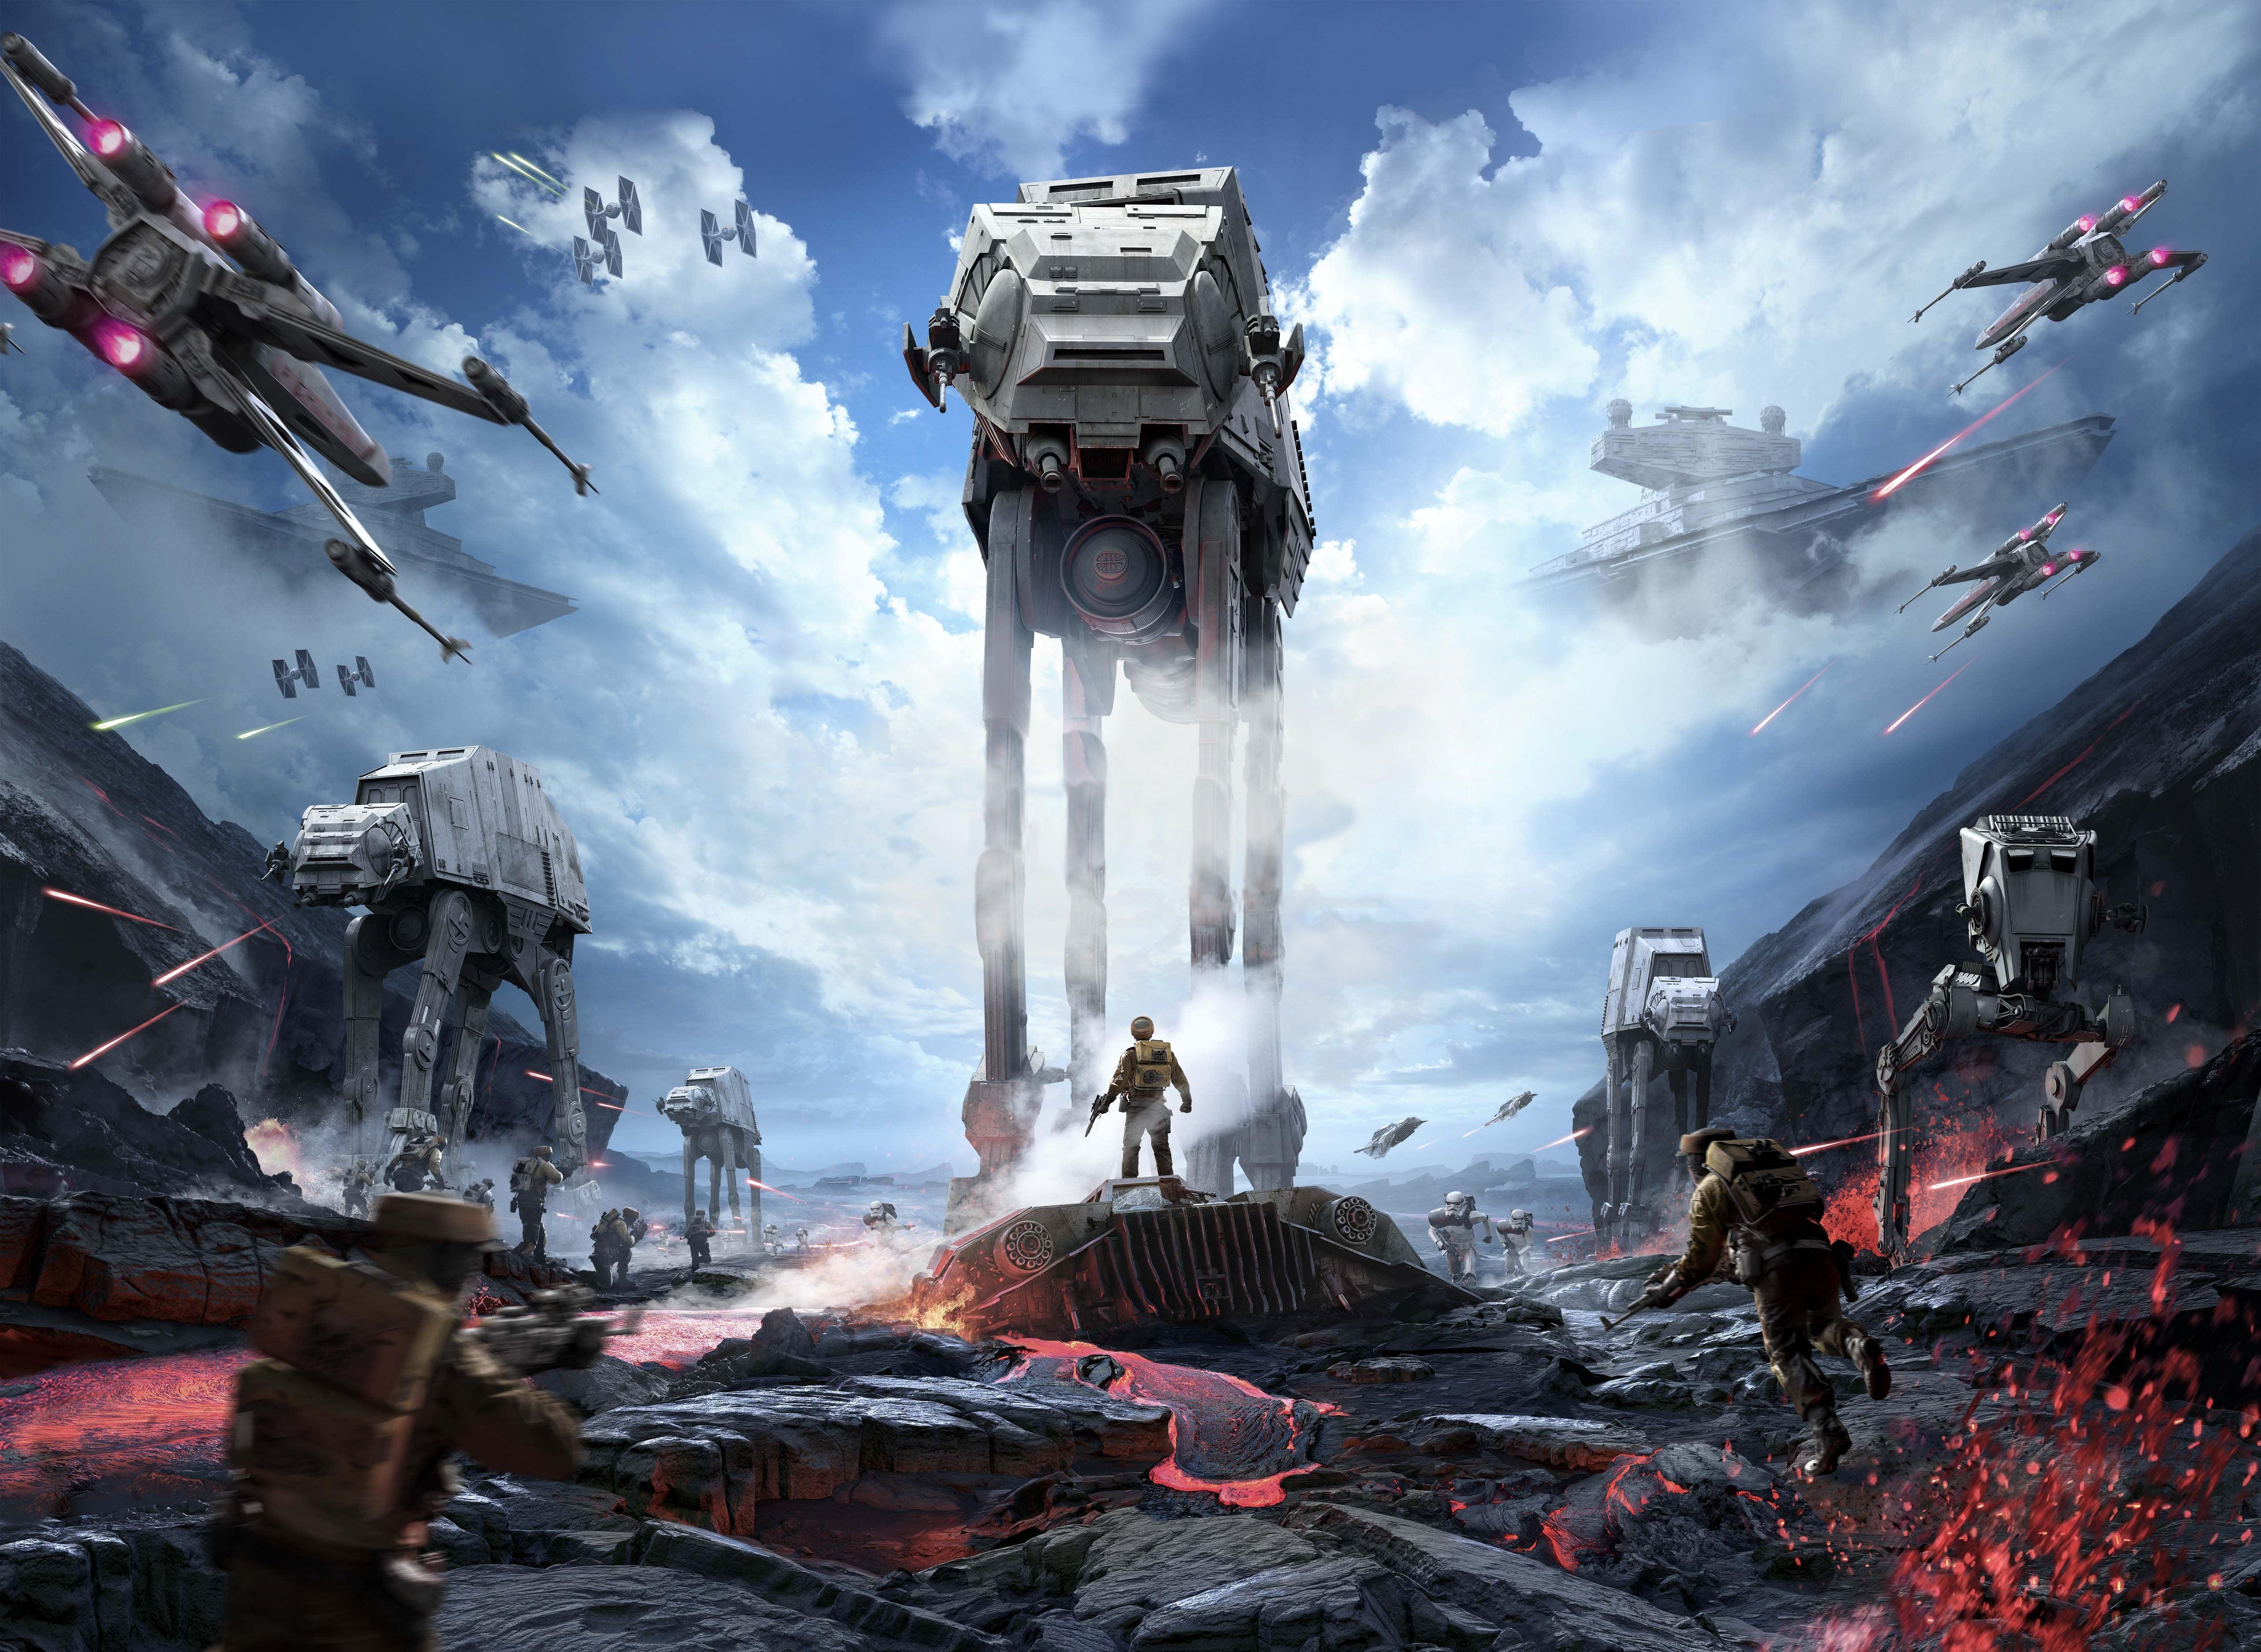 5132 x 3750 · jpeg - All Star Wars Battlefront Wallpapers - Screenshots + Concept art ...